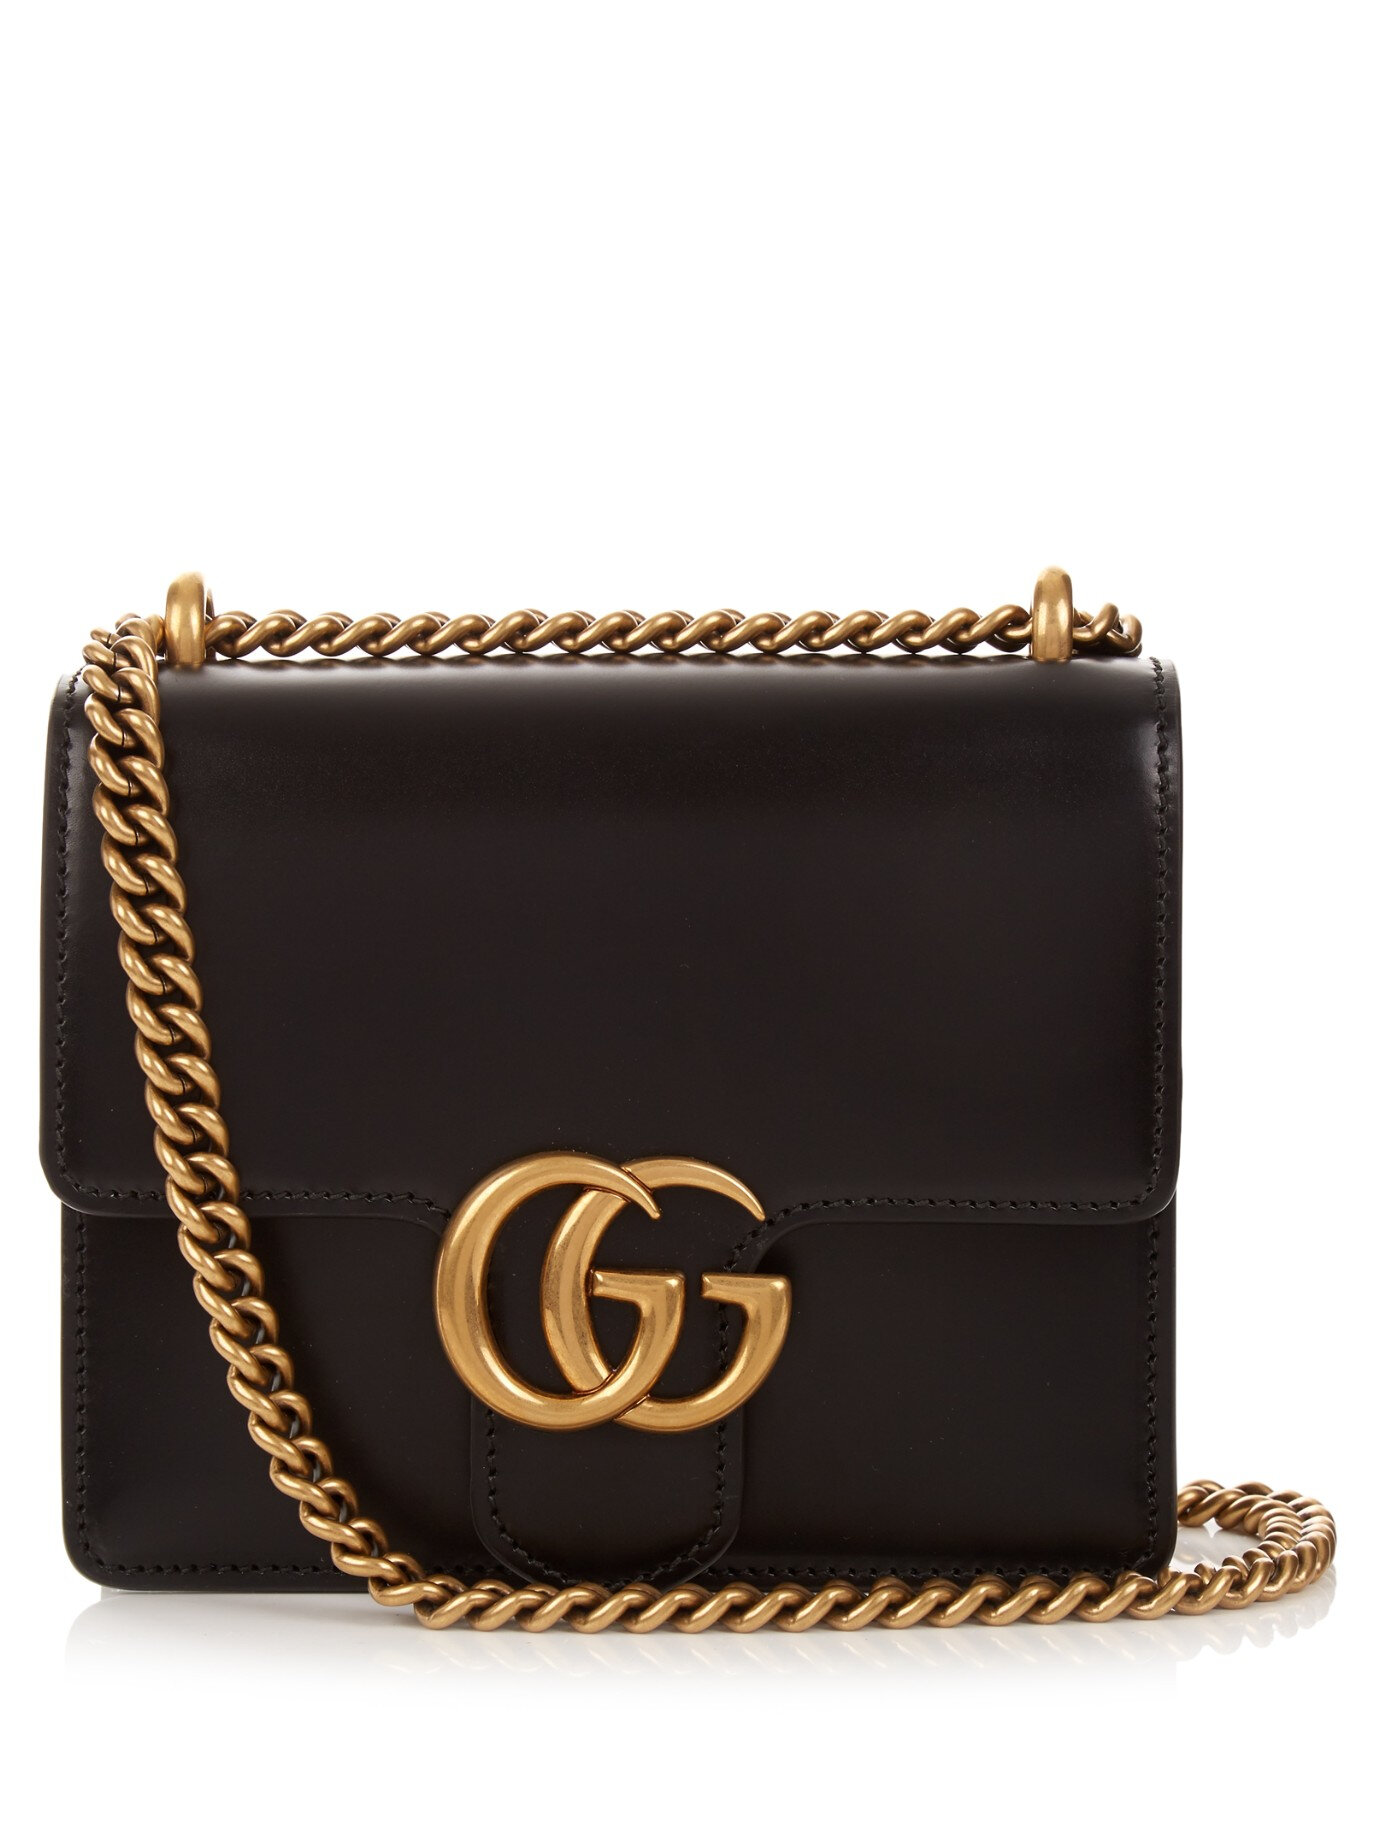 Gucci GG Marmont Mini Leather Bag - Black - Fablle